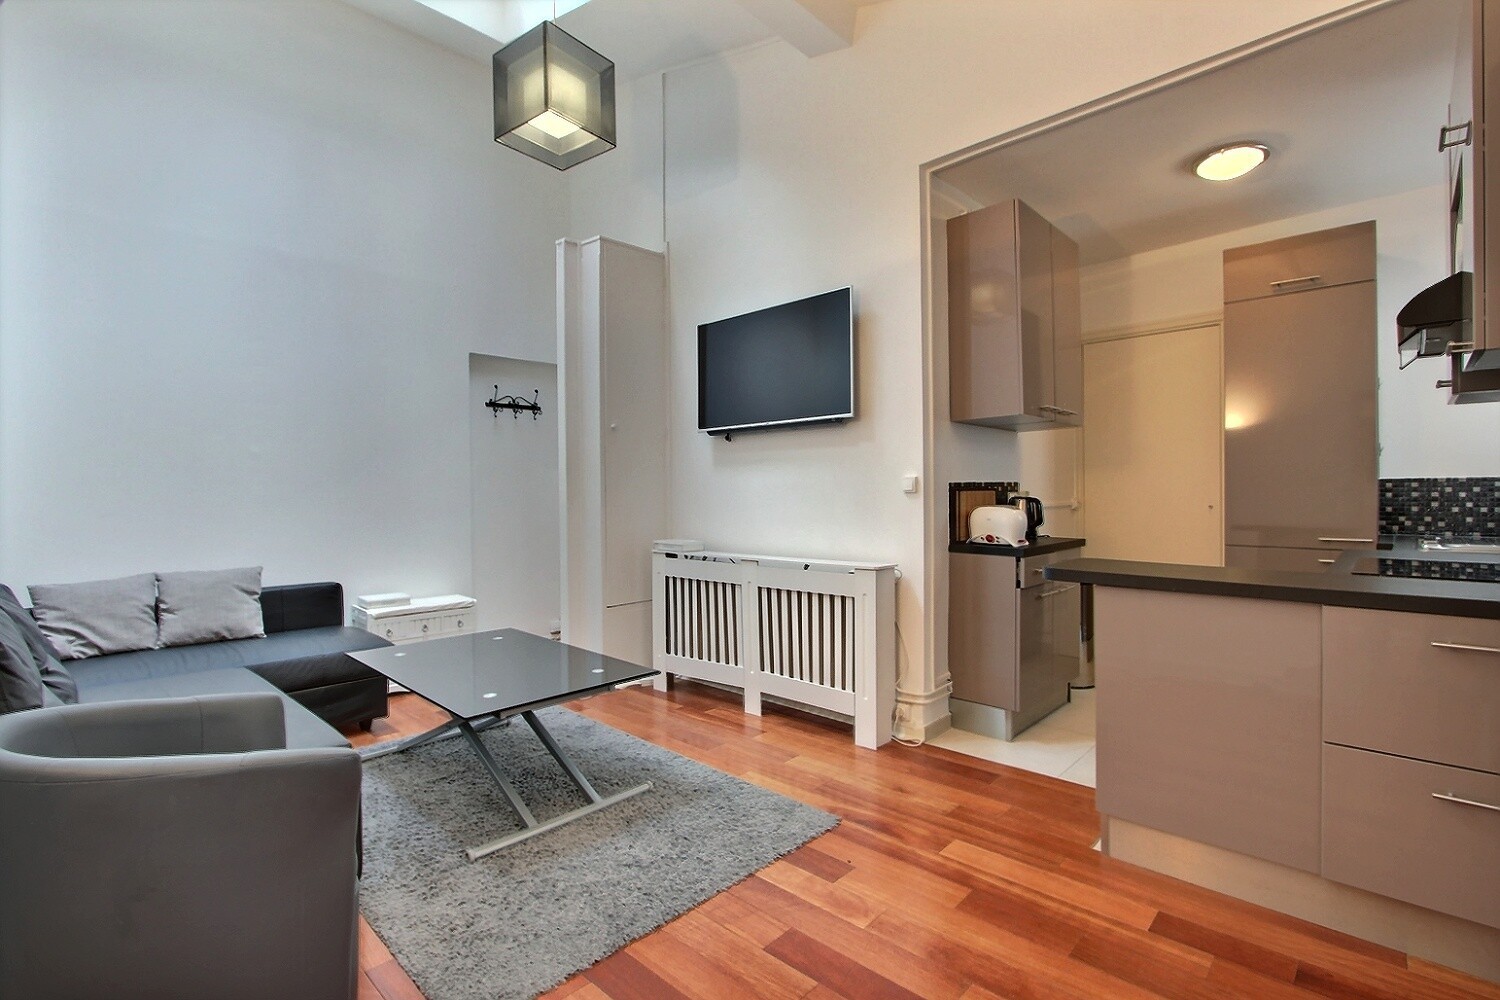 1 bedroom apartment rental in Paris, Rue de l'Avre